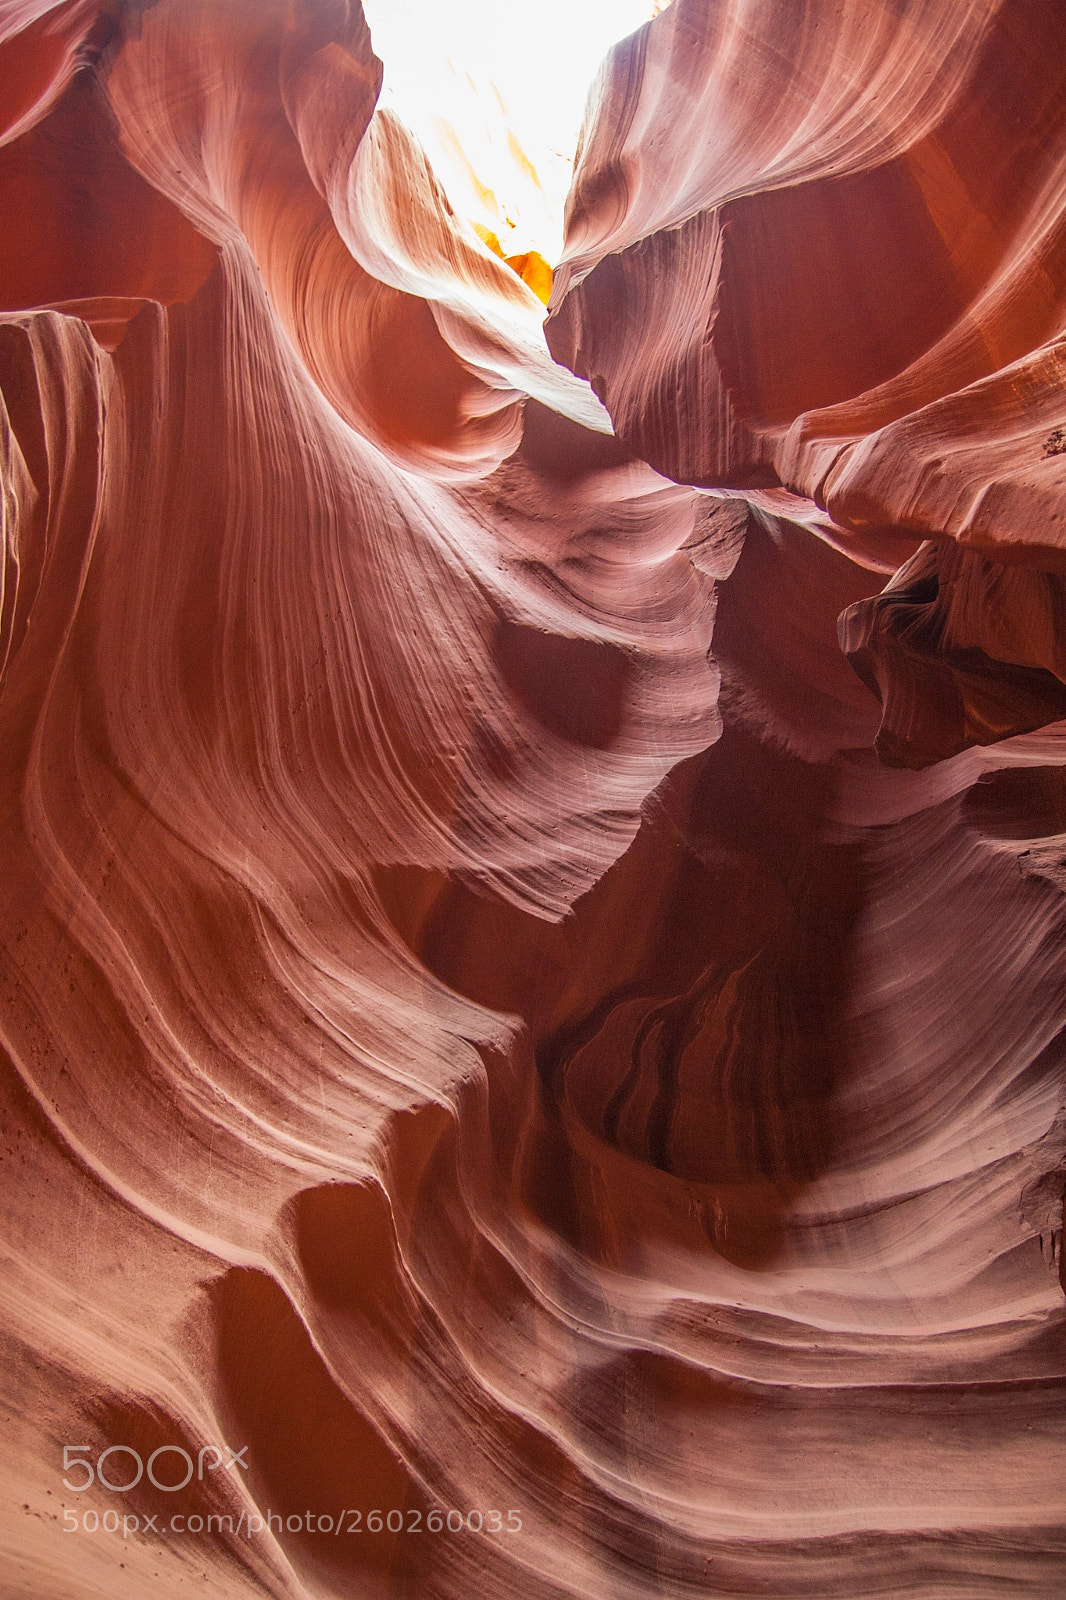 Canon EOS 30D sample photo. Antelope canyon photography